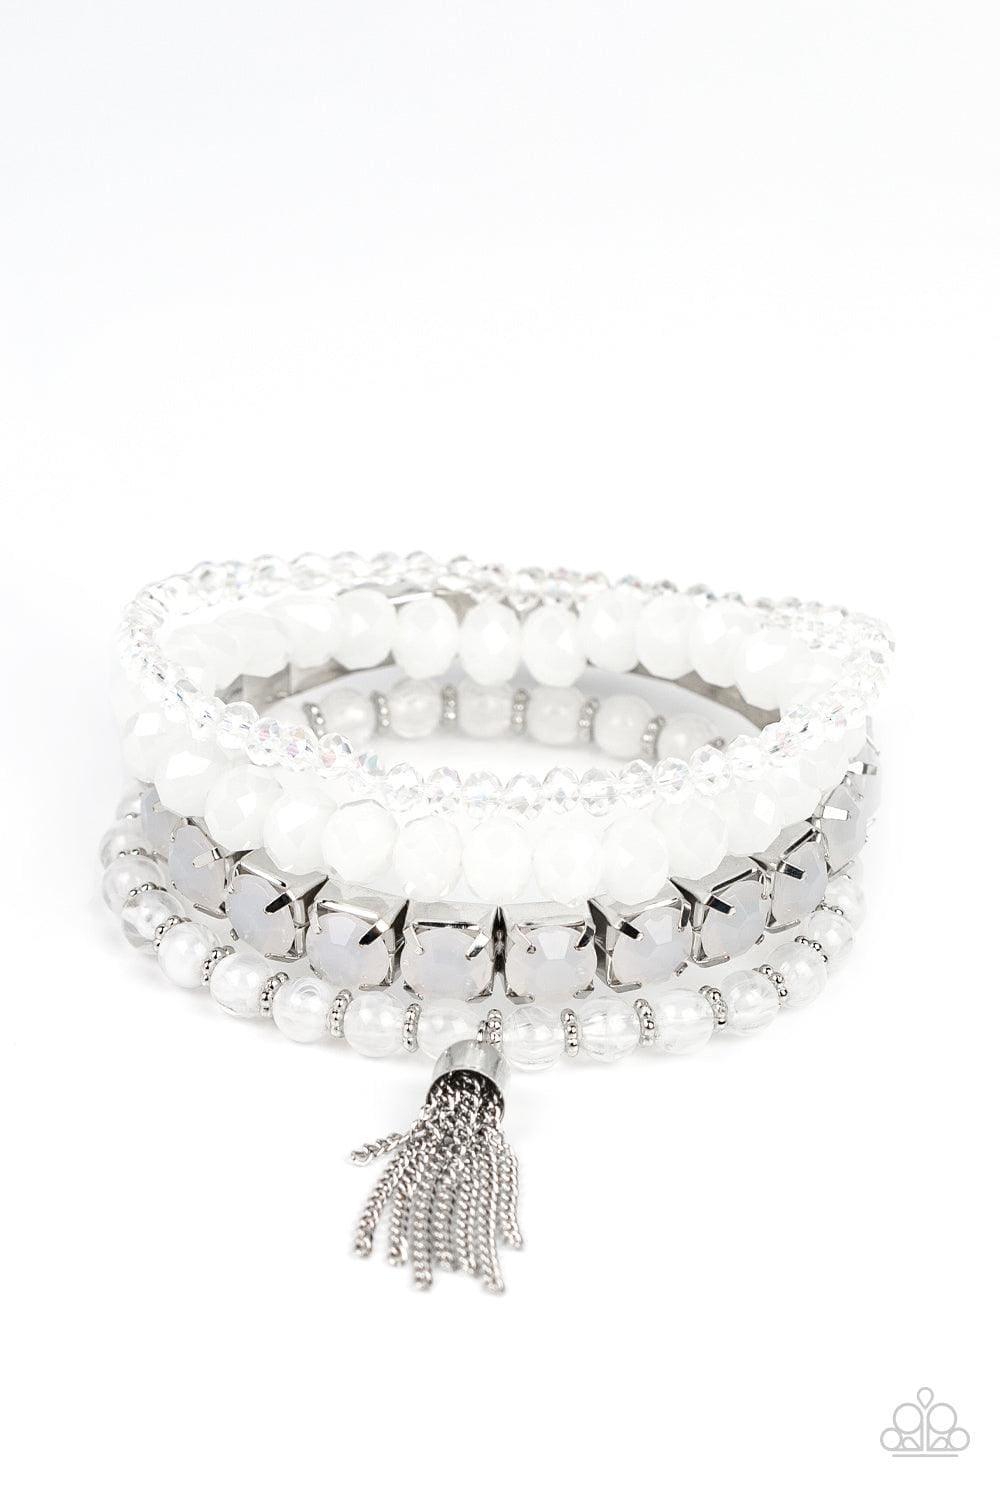 Paparazzi Accessories - Day Trip Trinket - White Bracelets - Bling by JessieK